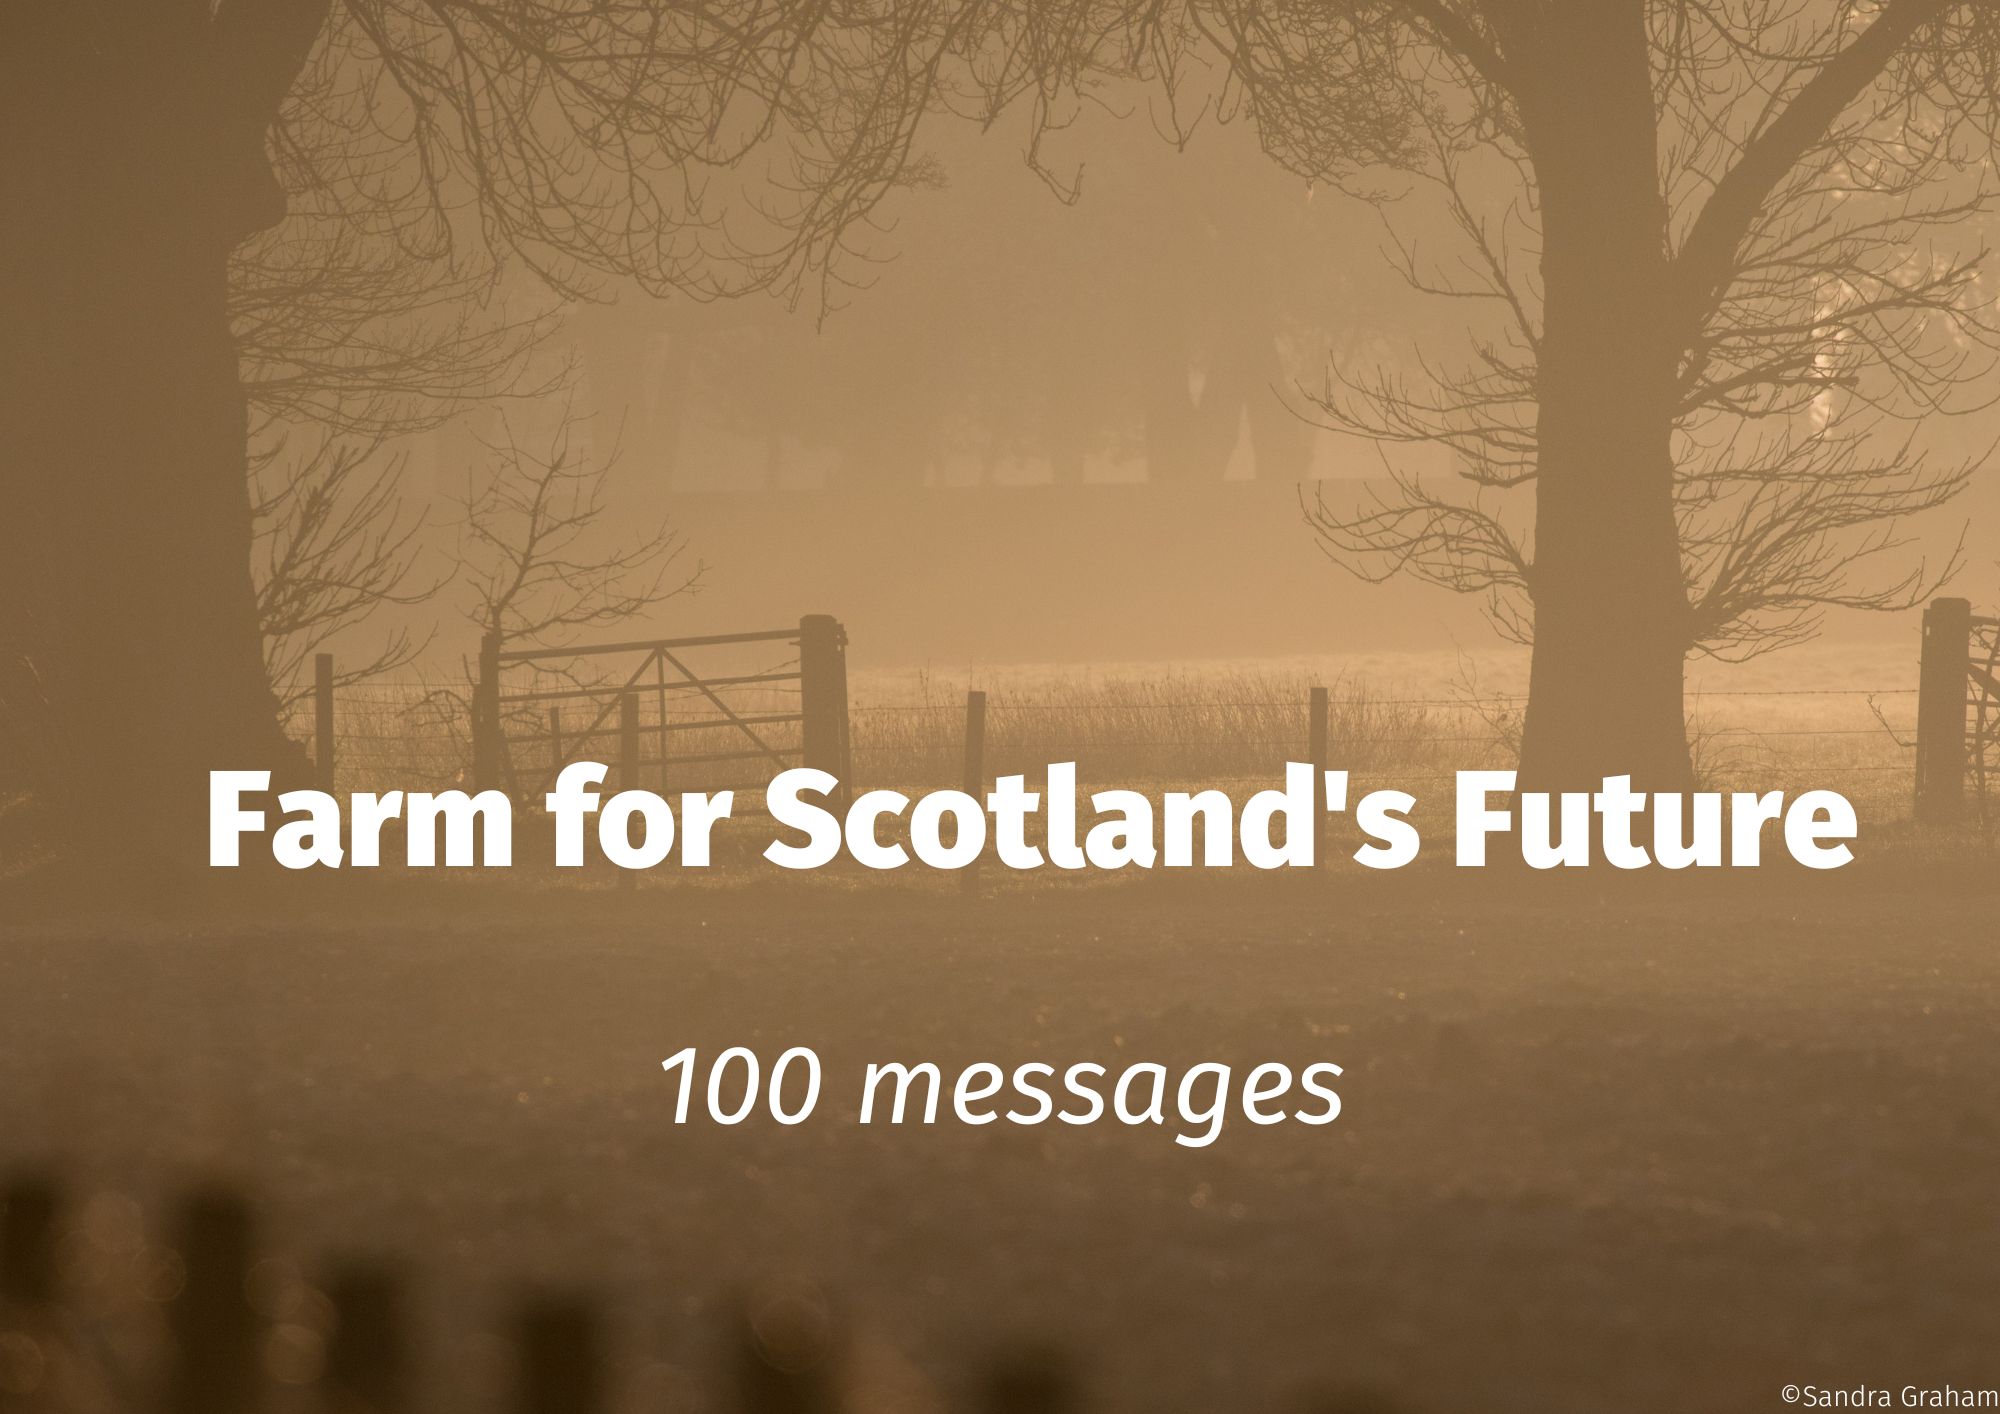 Dear Cabinet Secretary, farming matters to Scotland’s people